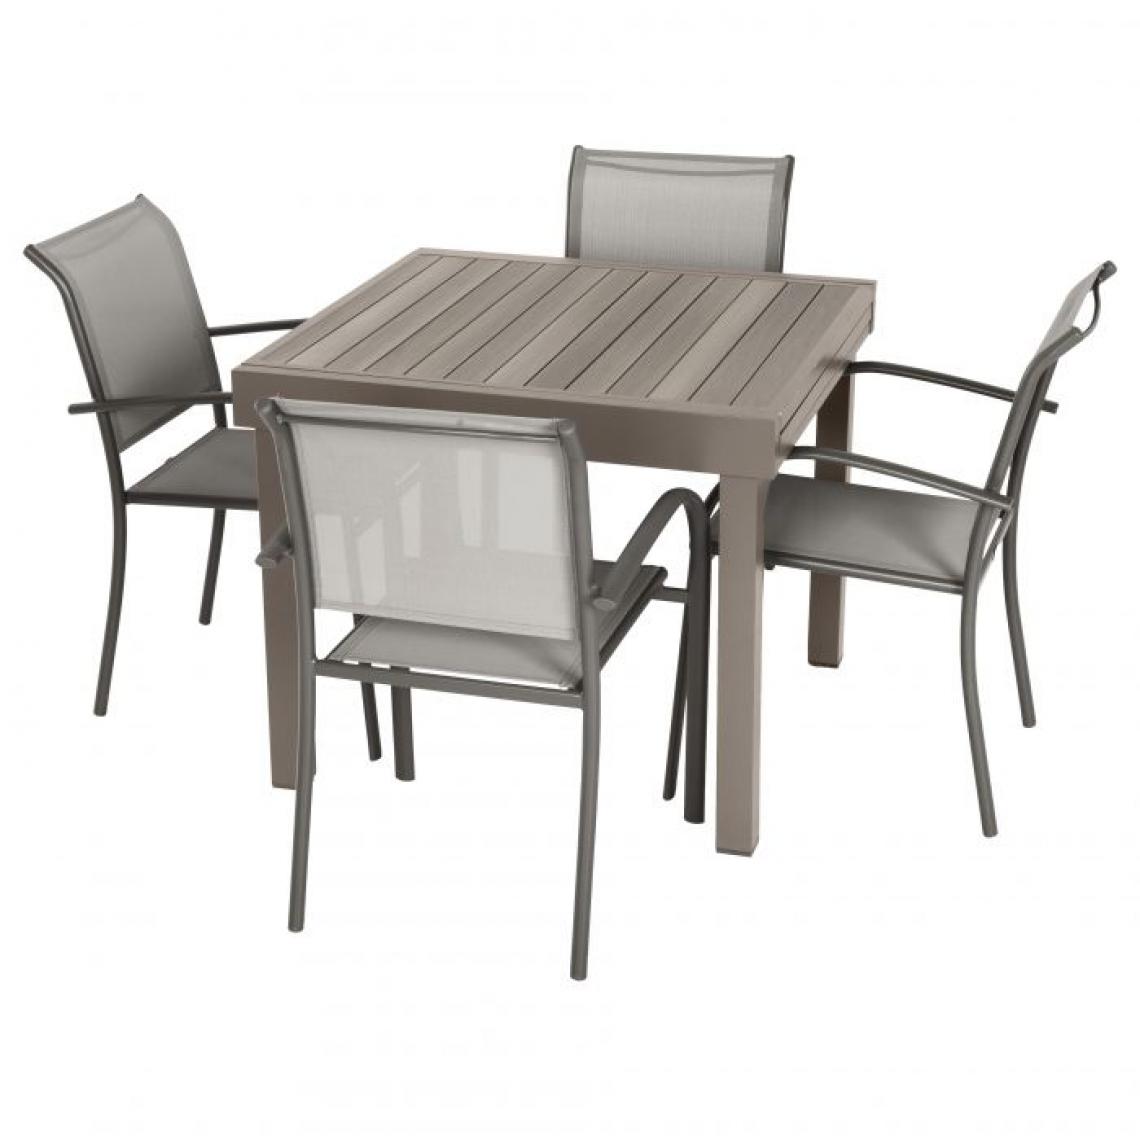 Alter - Table carrée extensible en aluminium, coloris gris tourterelle, fermée : 90 cm (extensible jusqu'à 180 cm) x 90 x h.75 - Tables à manger